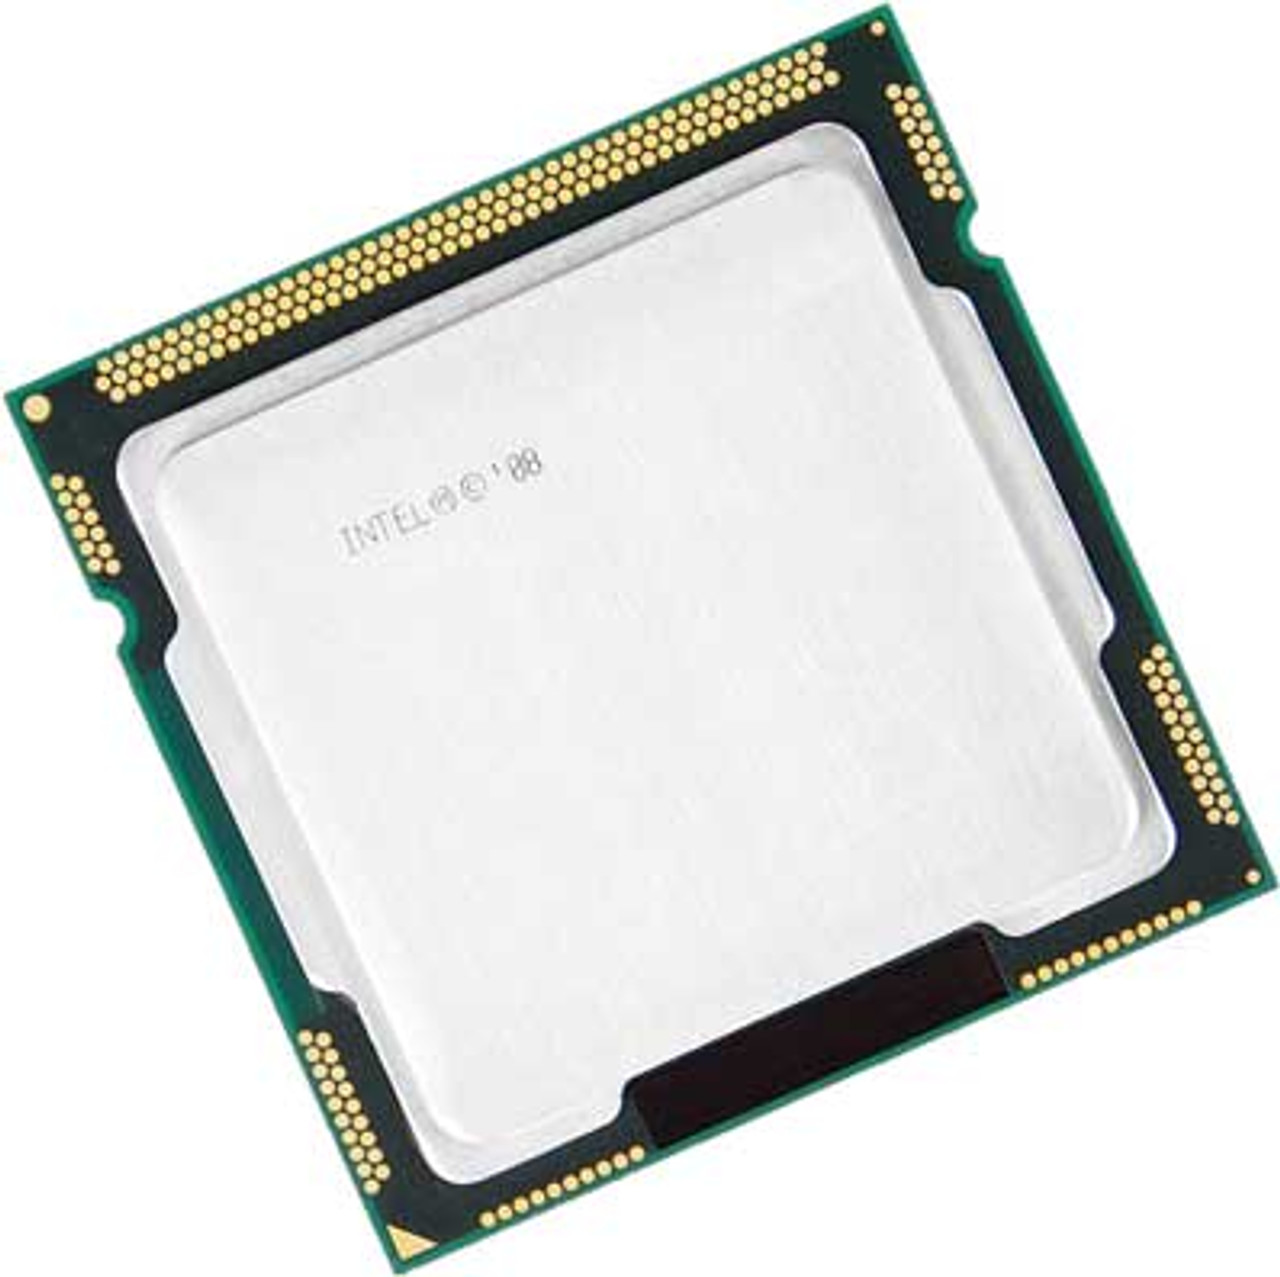 Intel BX80605I7875K - 2.93Ghz 2.5GT/s LGA1156 8MB Intel Core i7-875K  Quad-Core CPU Processor